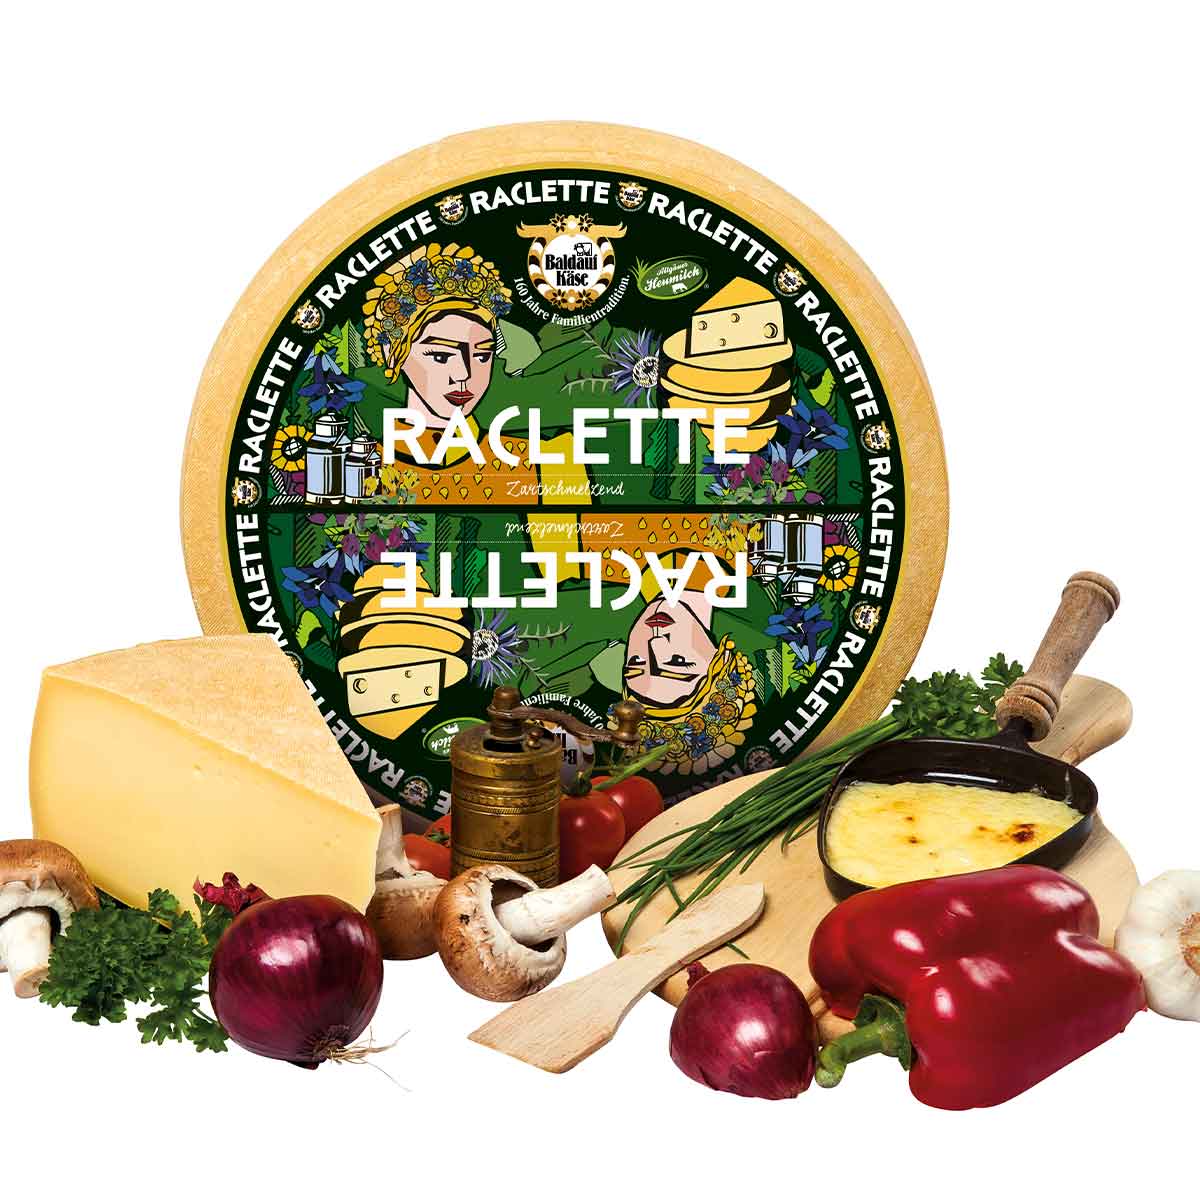 Baldauf Raclette